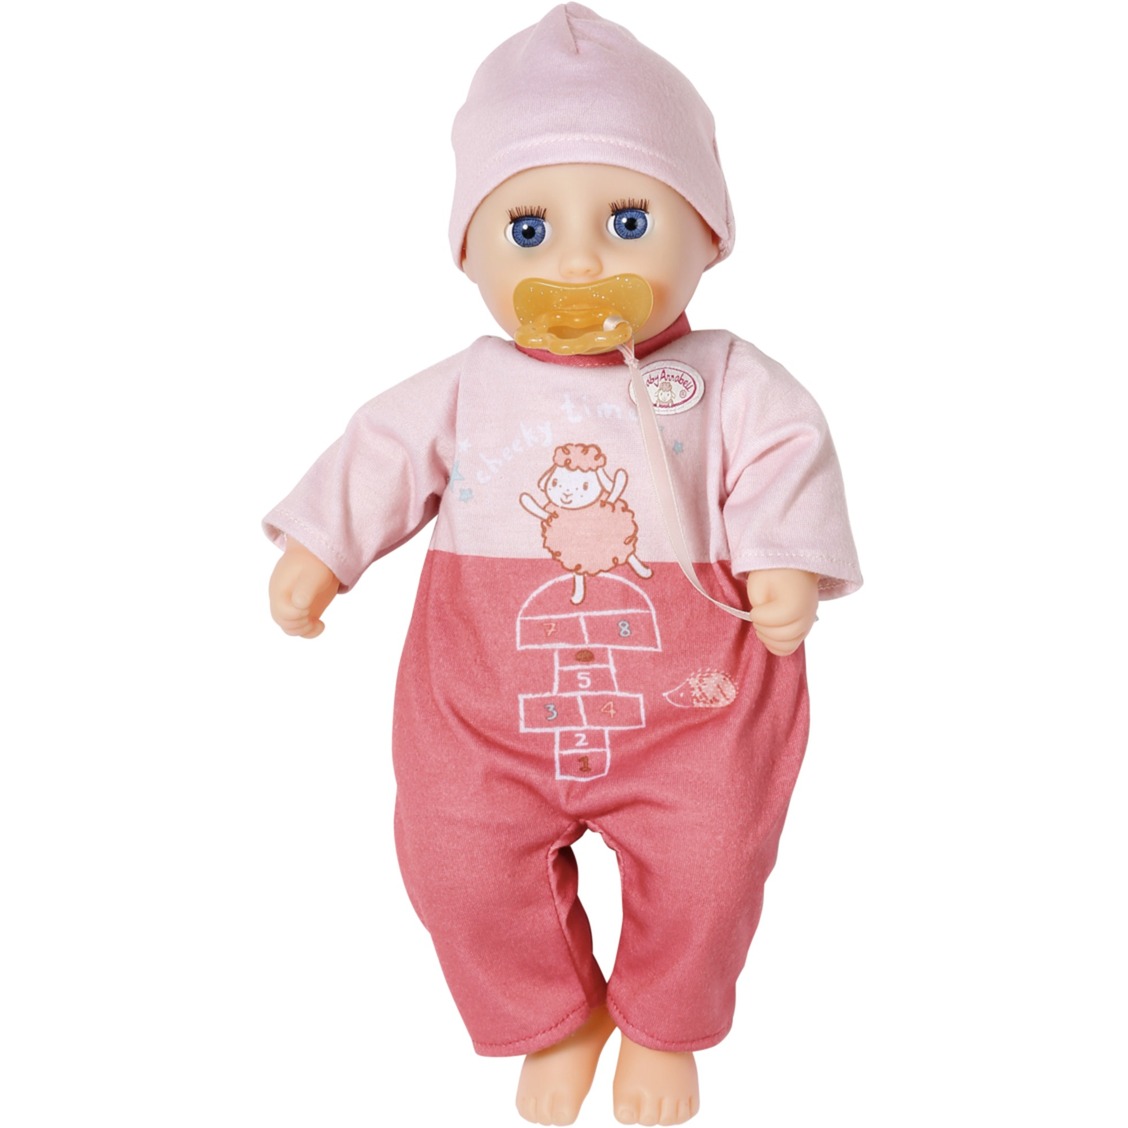 Image of Alternate - Baby Annabell® My First Cheeky Annabell 30cm, Puppe online einkaufen bei Alternate